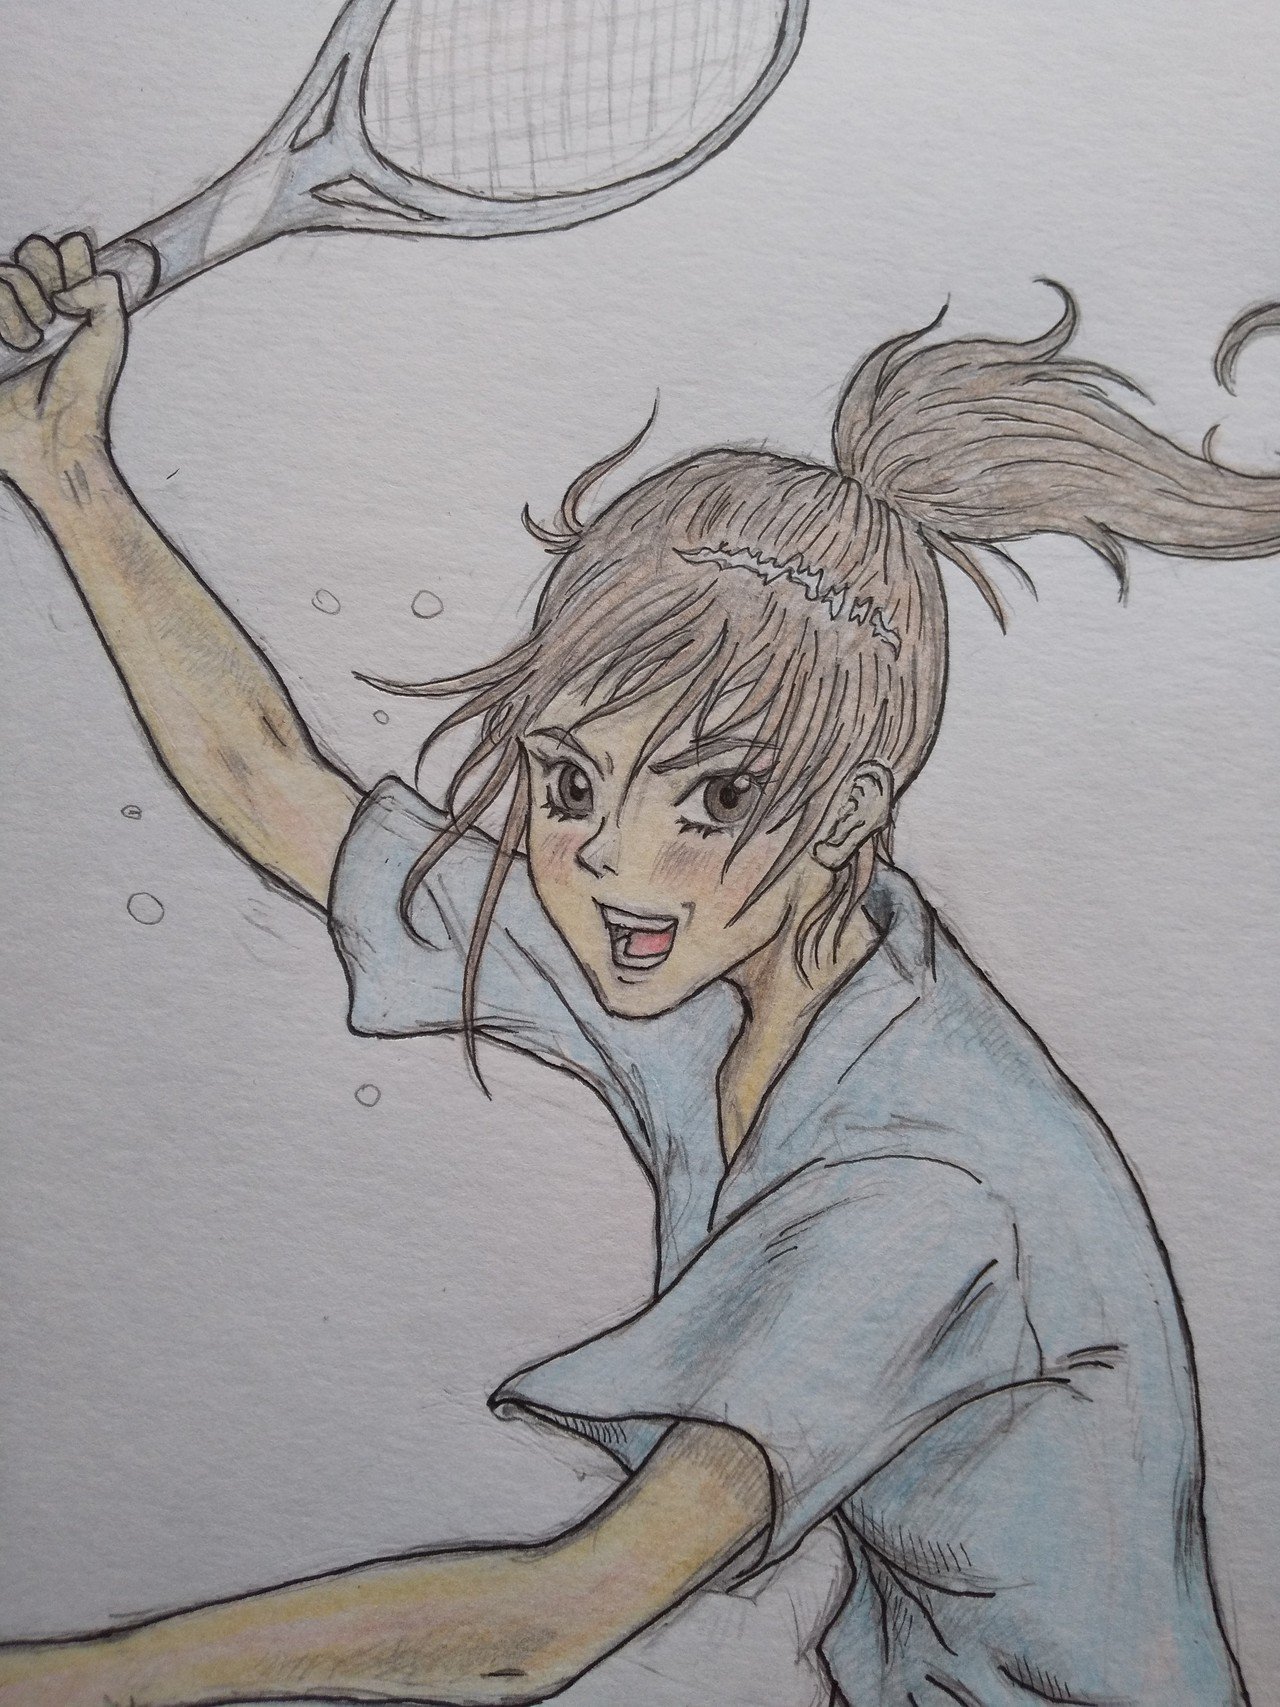 ソフトテニス の女の子を描く 絵描き侍 Note